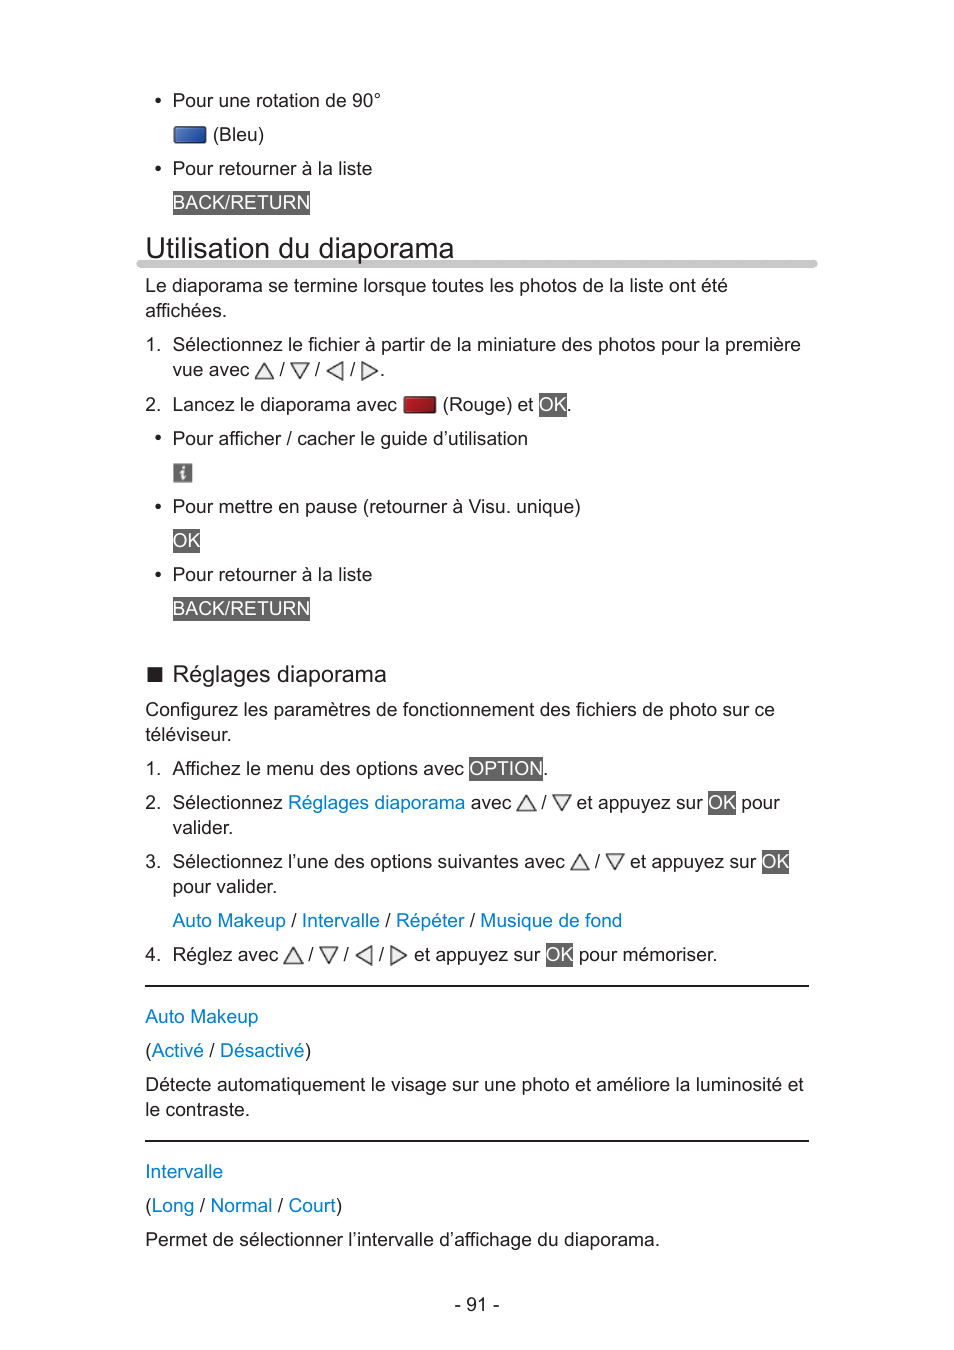 Utilisation du diaporama, Réglages diaporama | Panasonic TXL39E6YW Manuel d'utilisation | Page 91 / 176